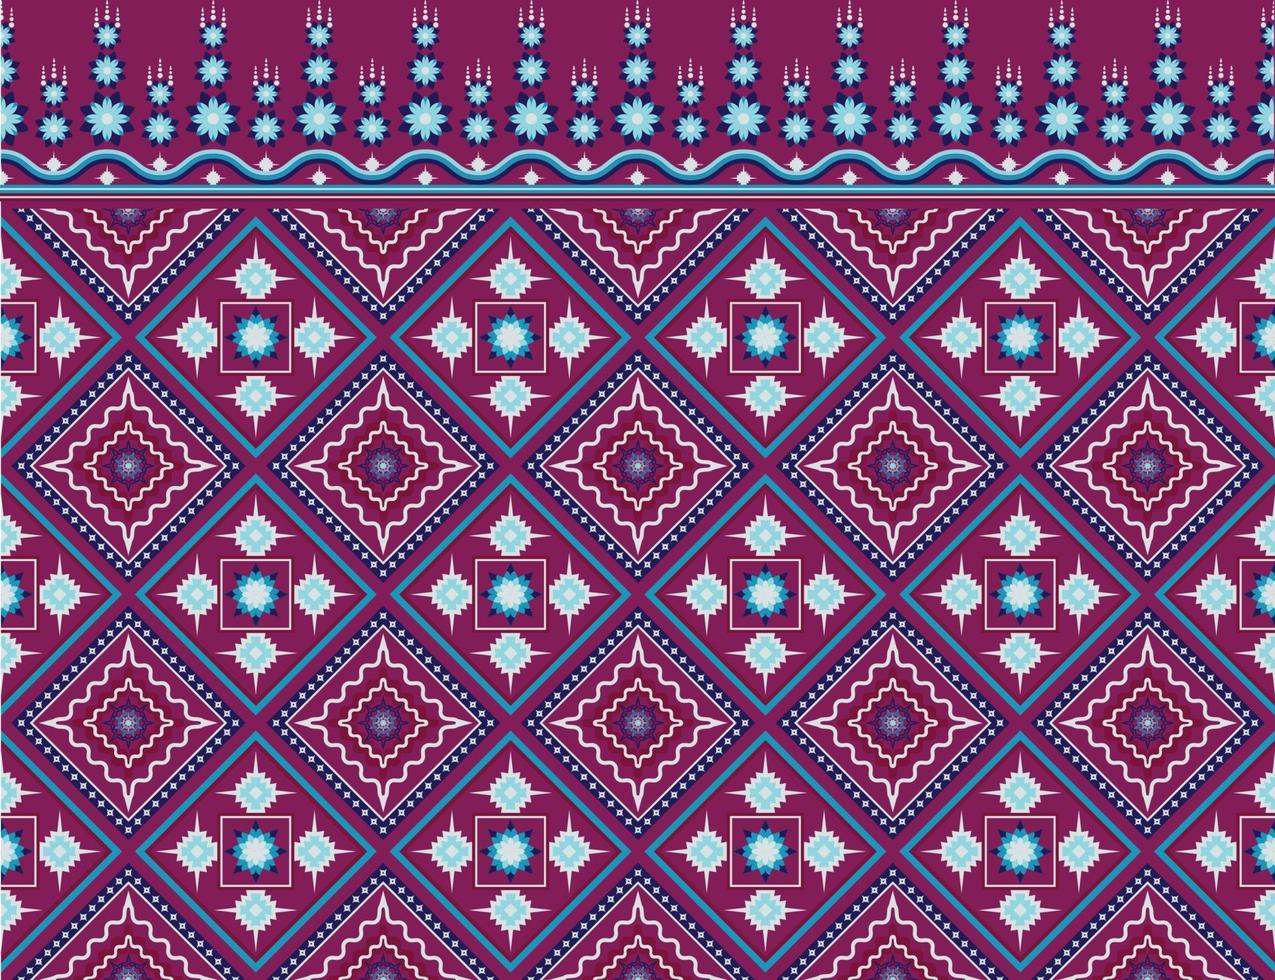 padrão étnico tecido textura geométrica vetor asteca oriental ilustração retro telha de cerâmica